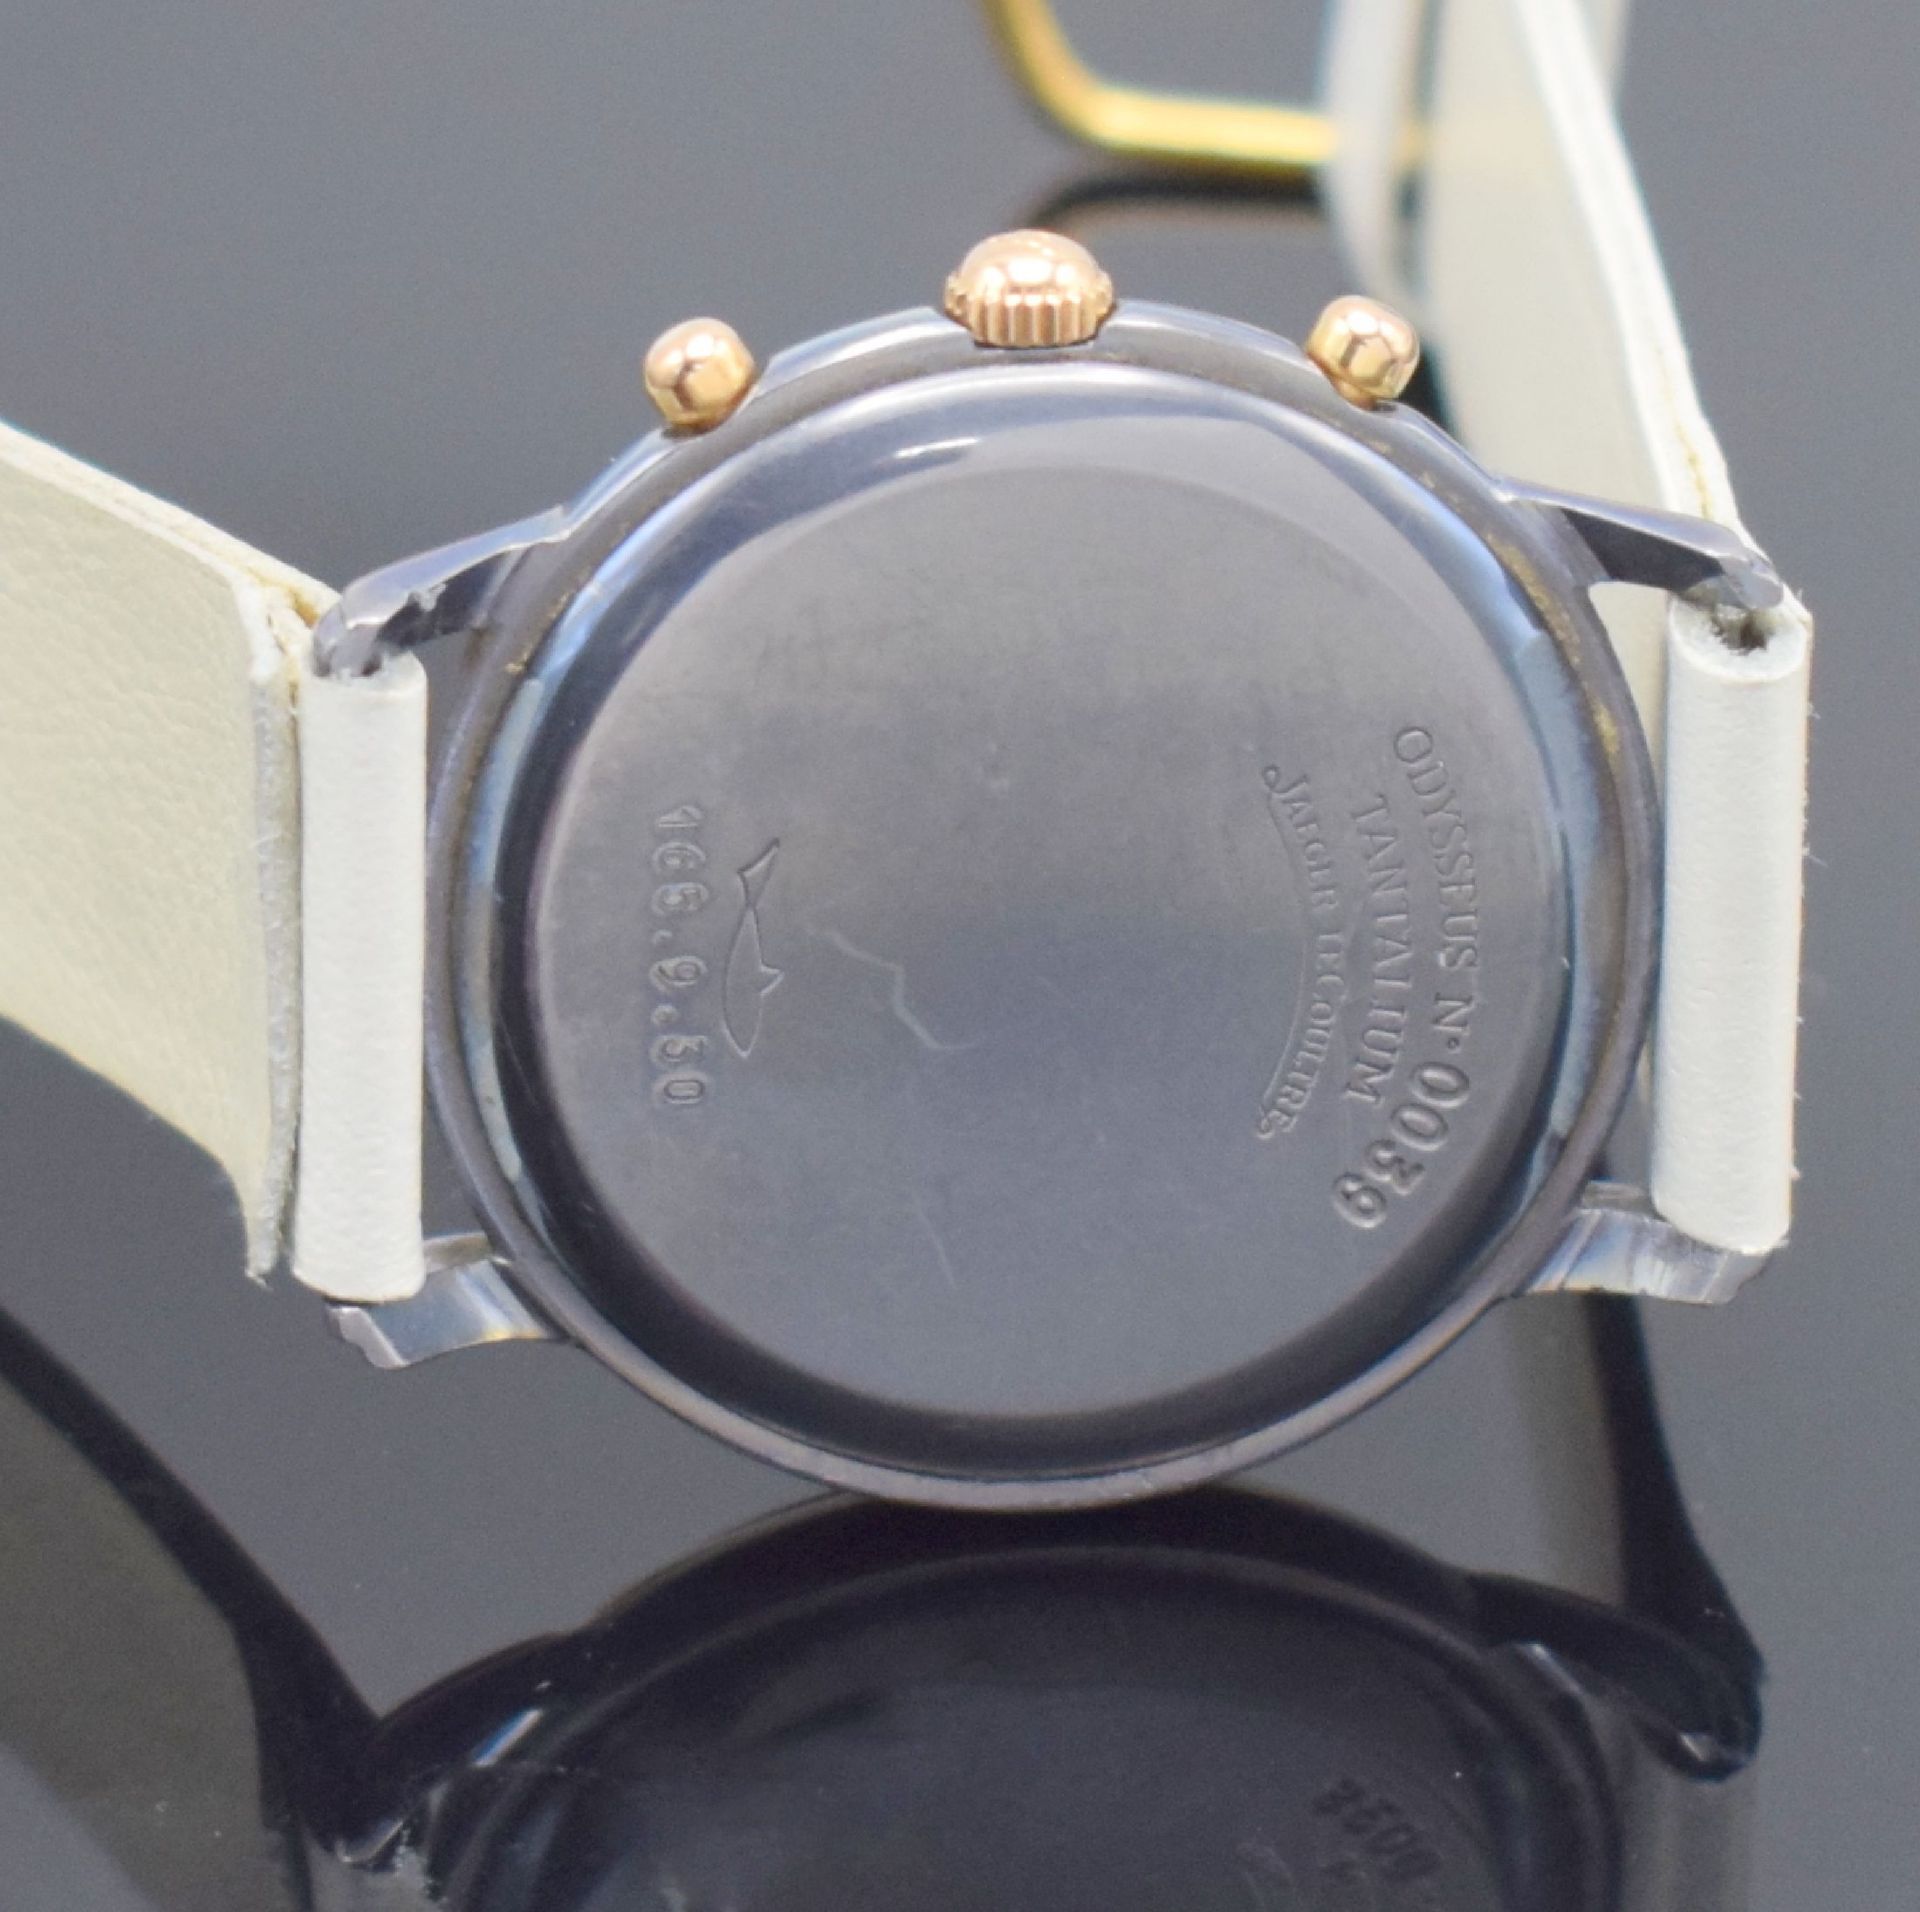 Jaeger-LeCoultre Odysseus sehr seltener Armbandchronograph - Bild 7 aus 7